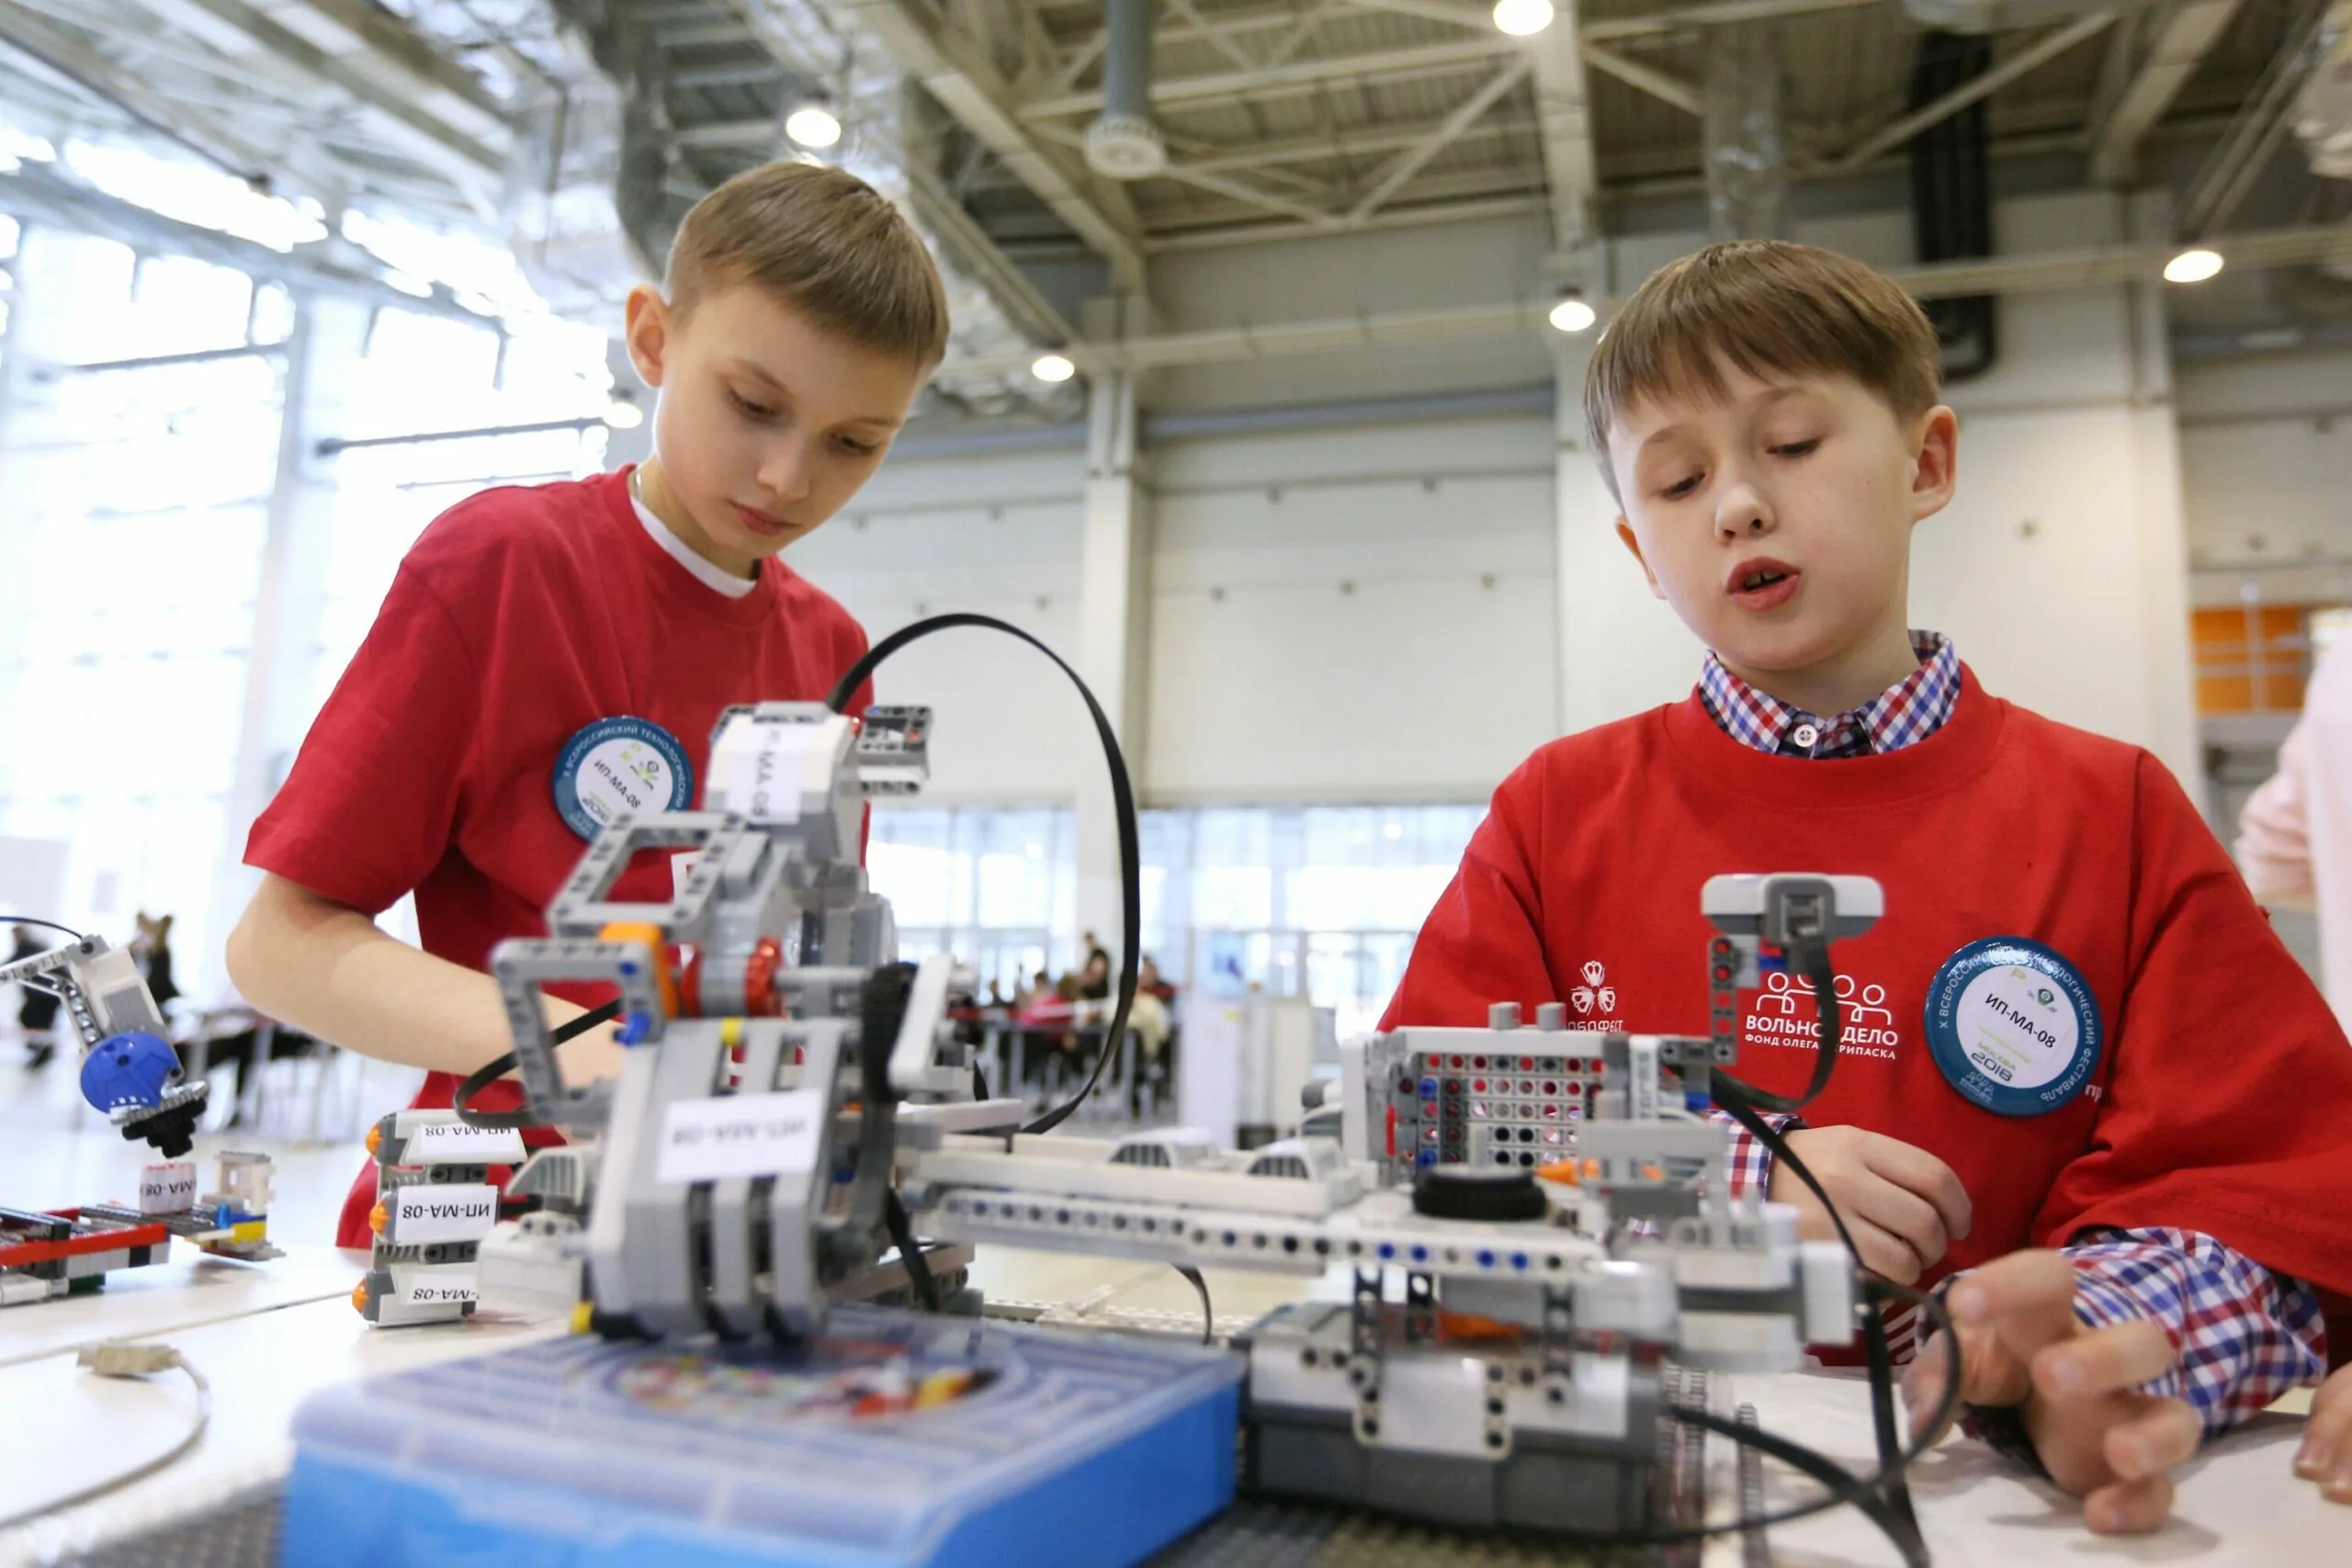 Кружок робототехники в Печатниках набирает юных инженеров, фото